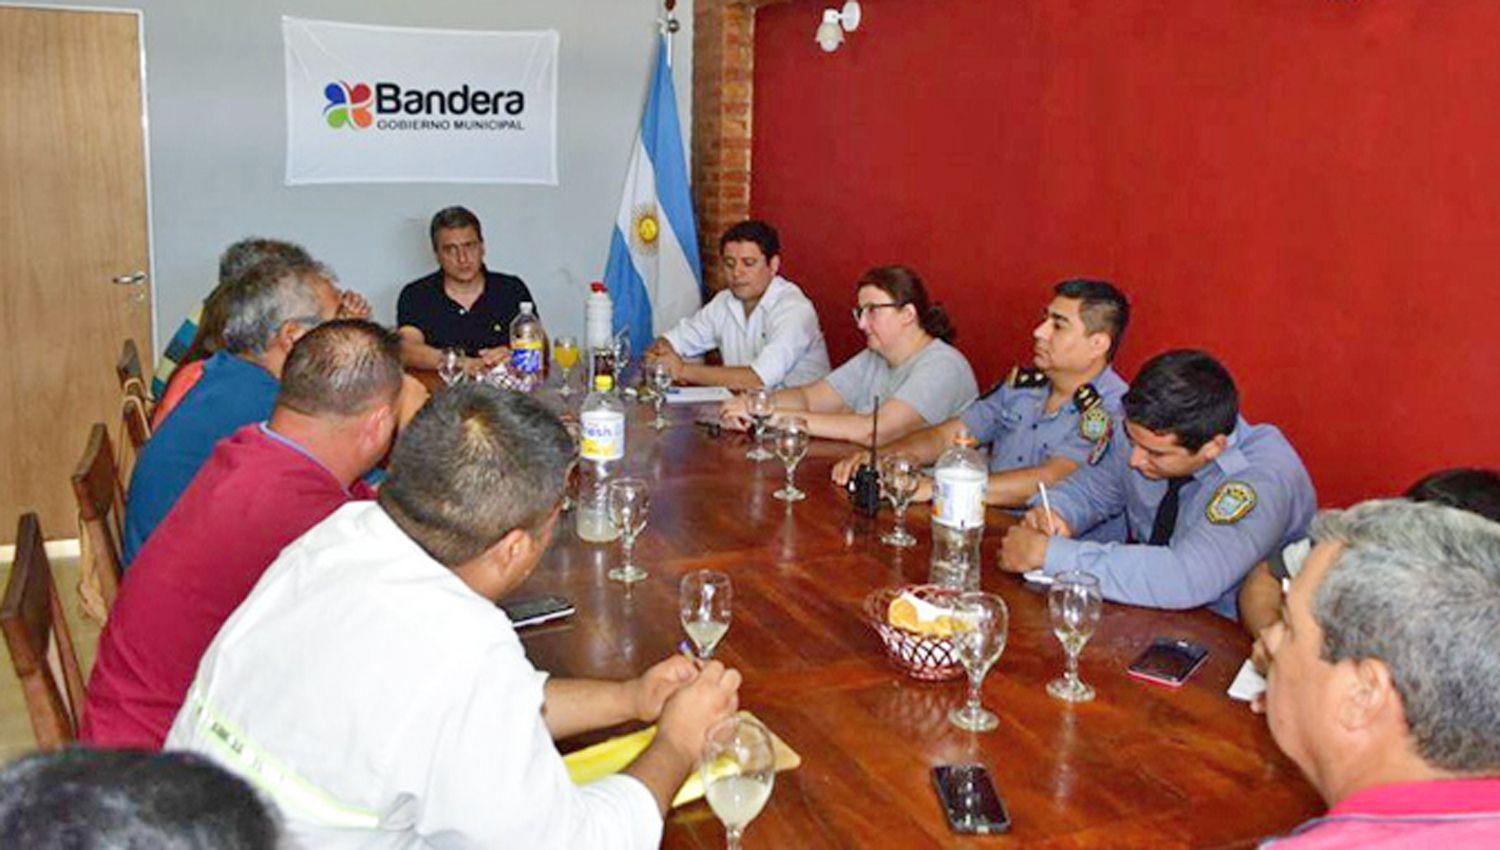 La ciudad de Bandera busca soluciones a traveacutes de un trabajo coordinado